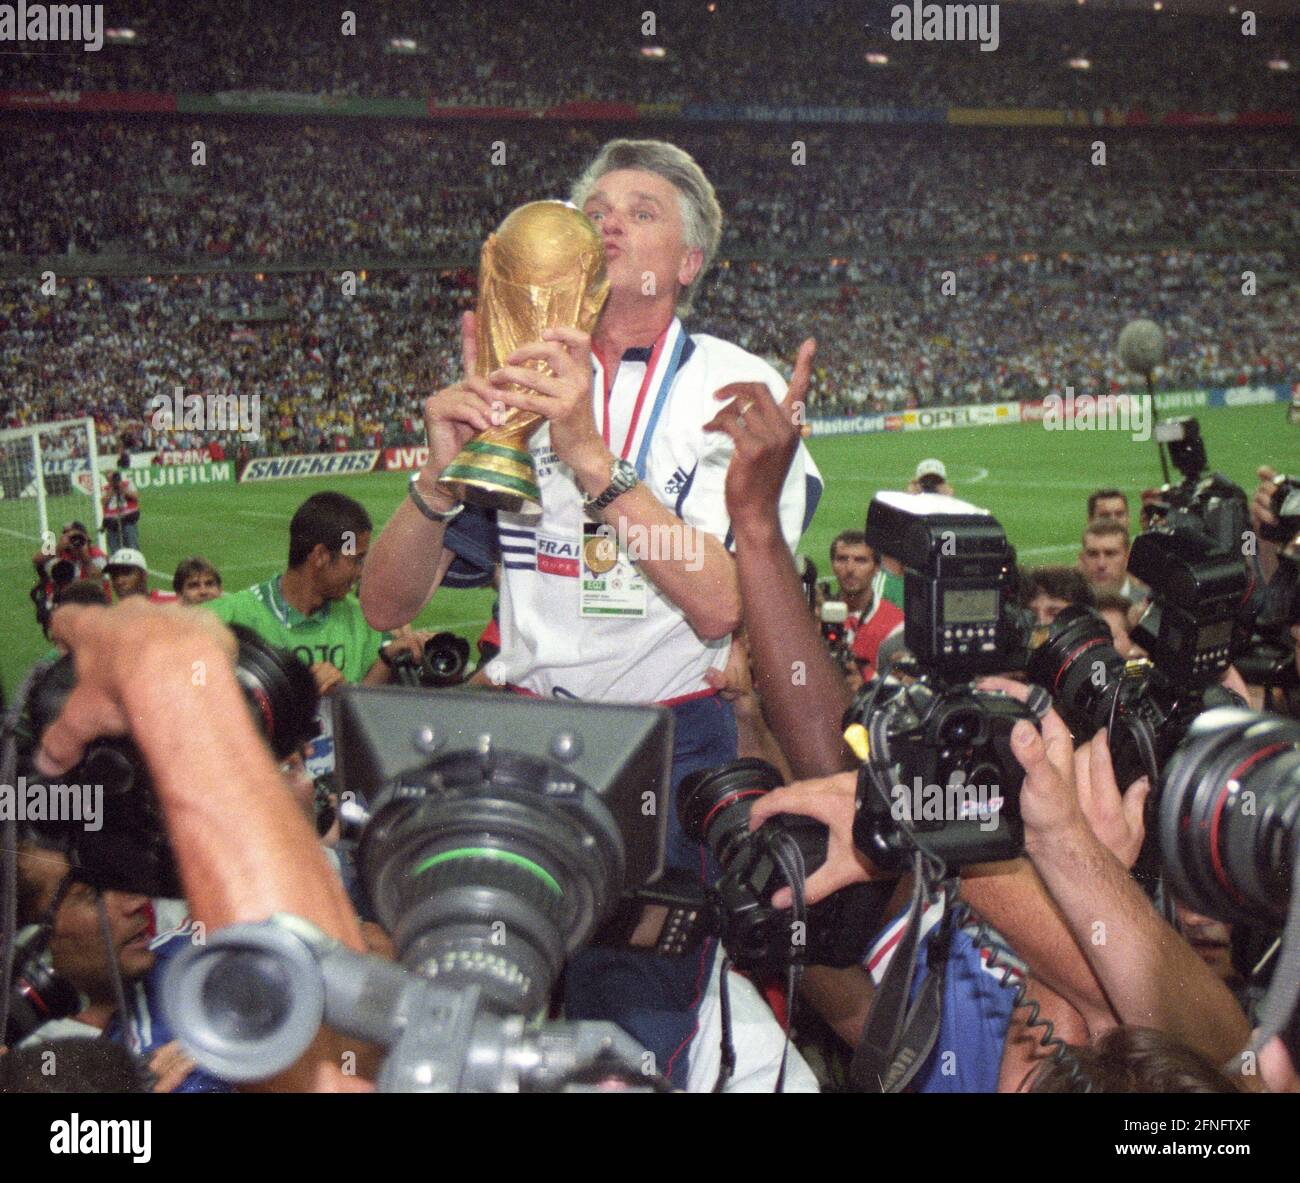 Campeonato Mundial 1998 en Francia. Final: Francia - Brasil 3:0/12.07.1998 en St. Denis. Entrenador Aime Jacquet (FRA) con el trofeo de la Copa del Mundo. [traducción automática] Foto de stock